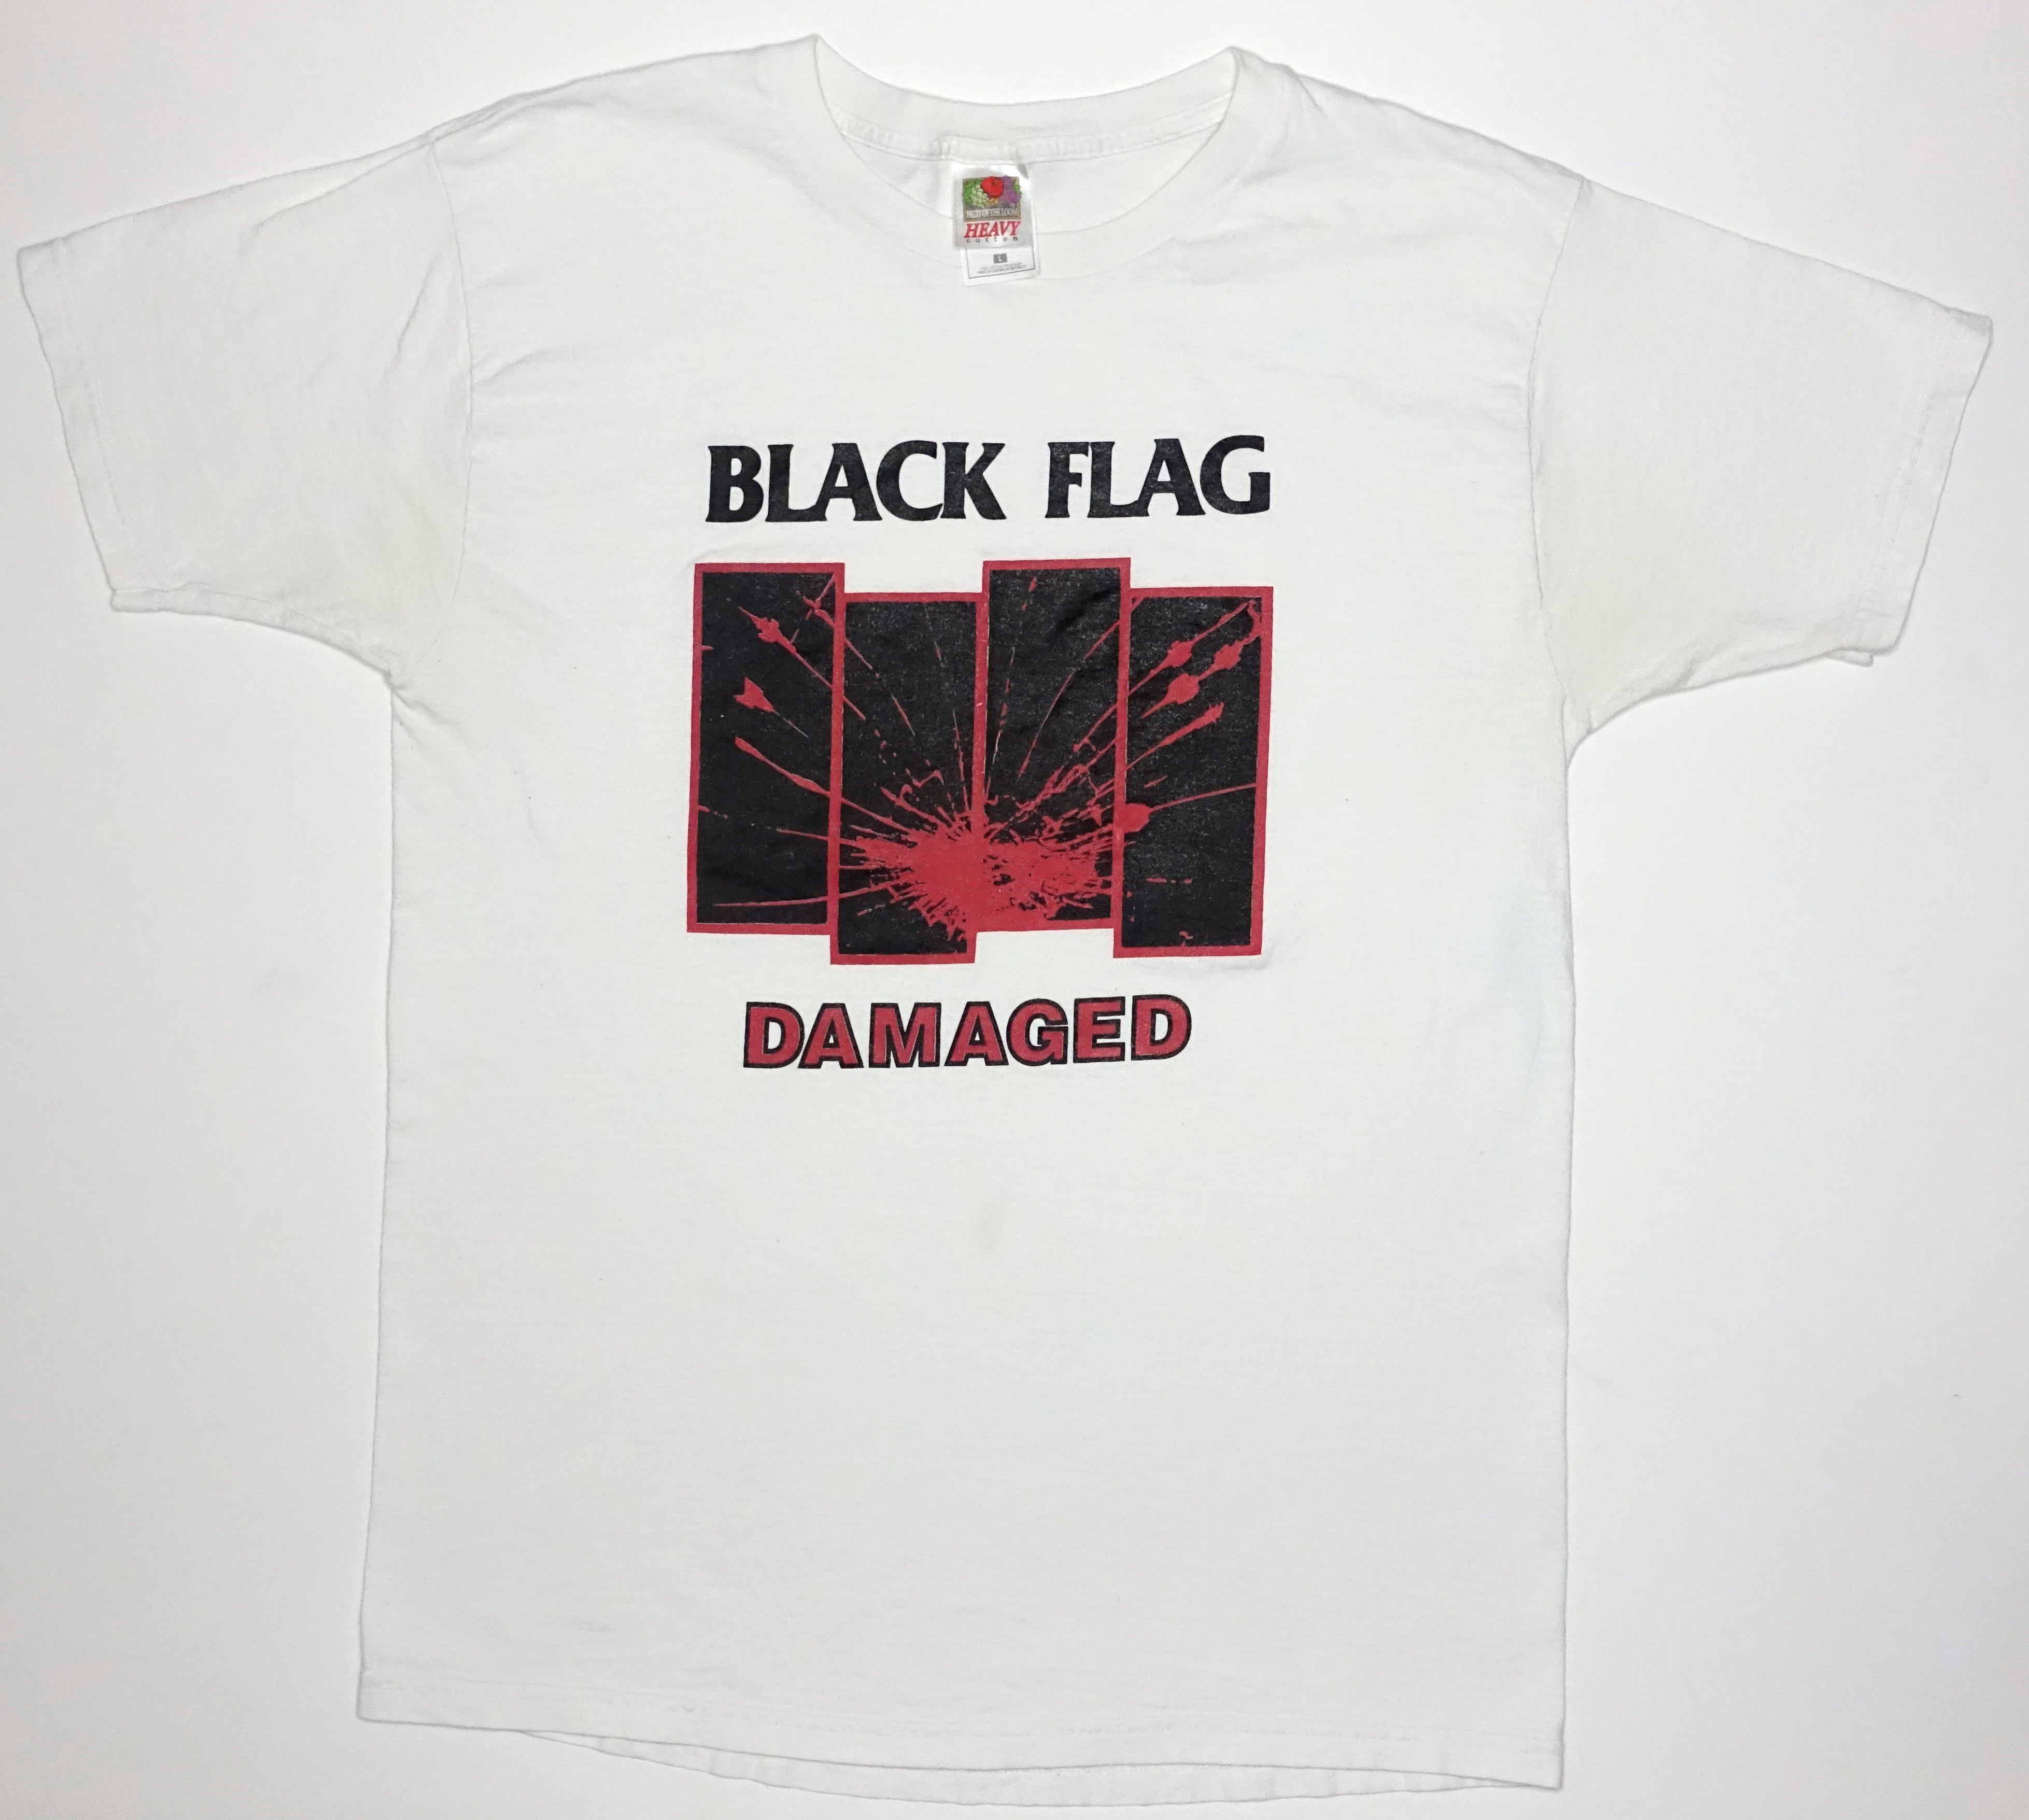 Black Flag - Damaged Tour Shirt Size Large